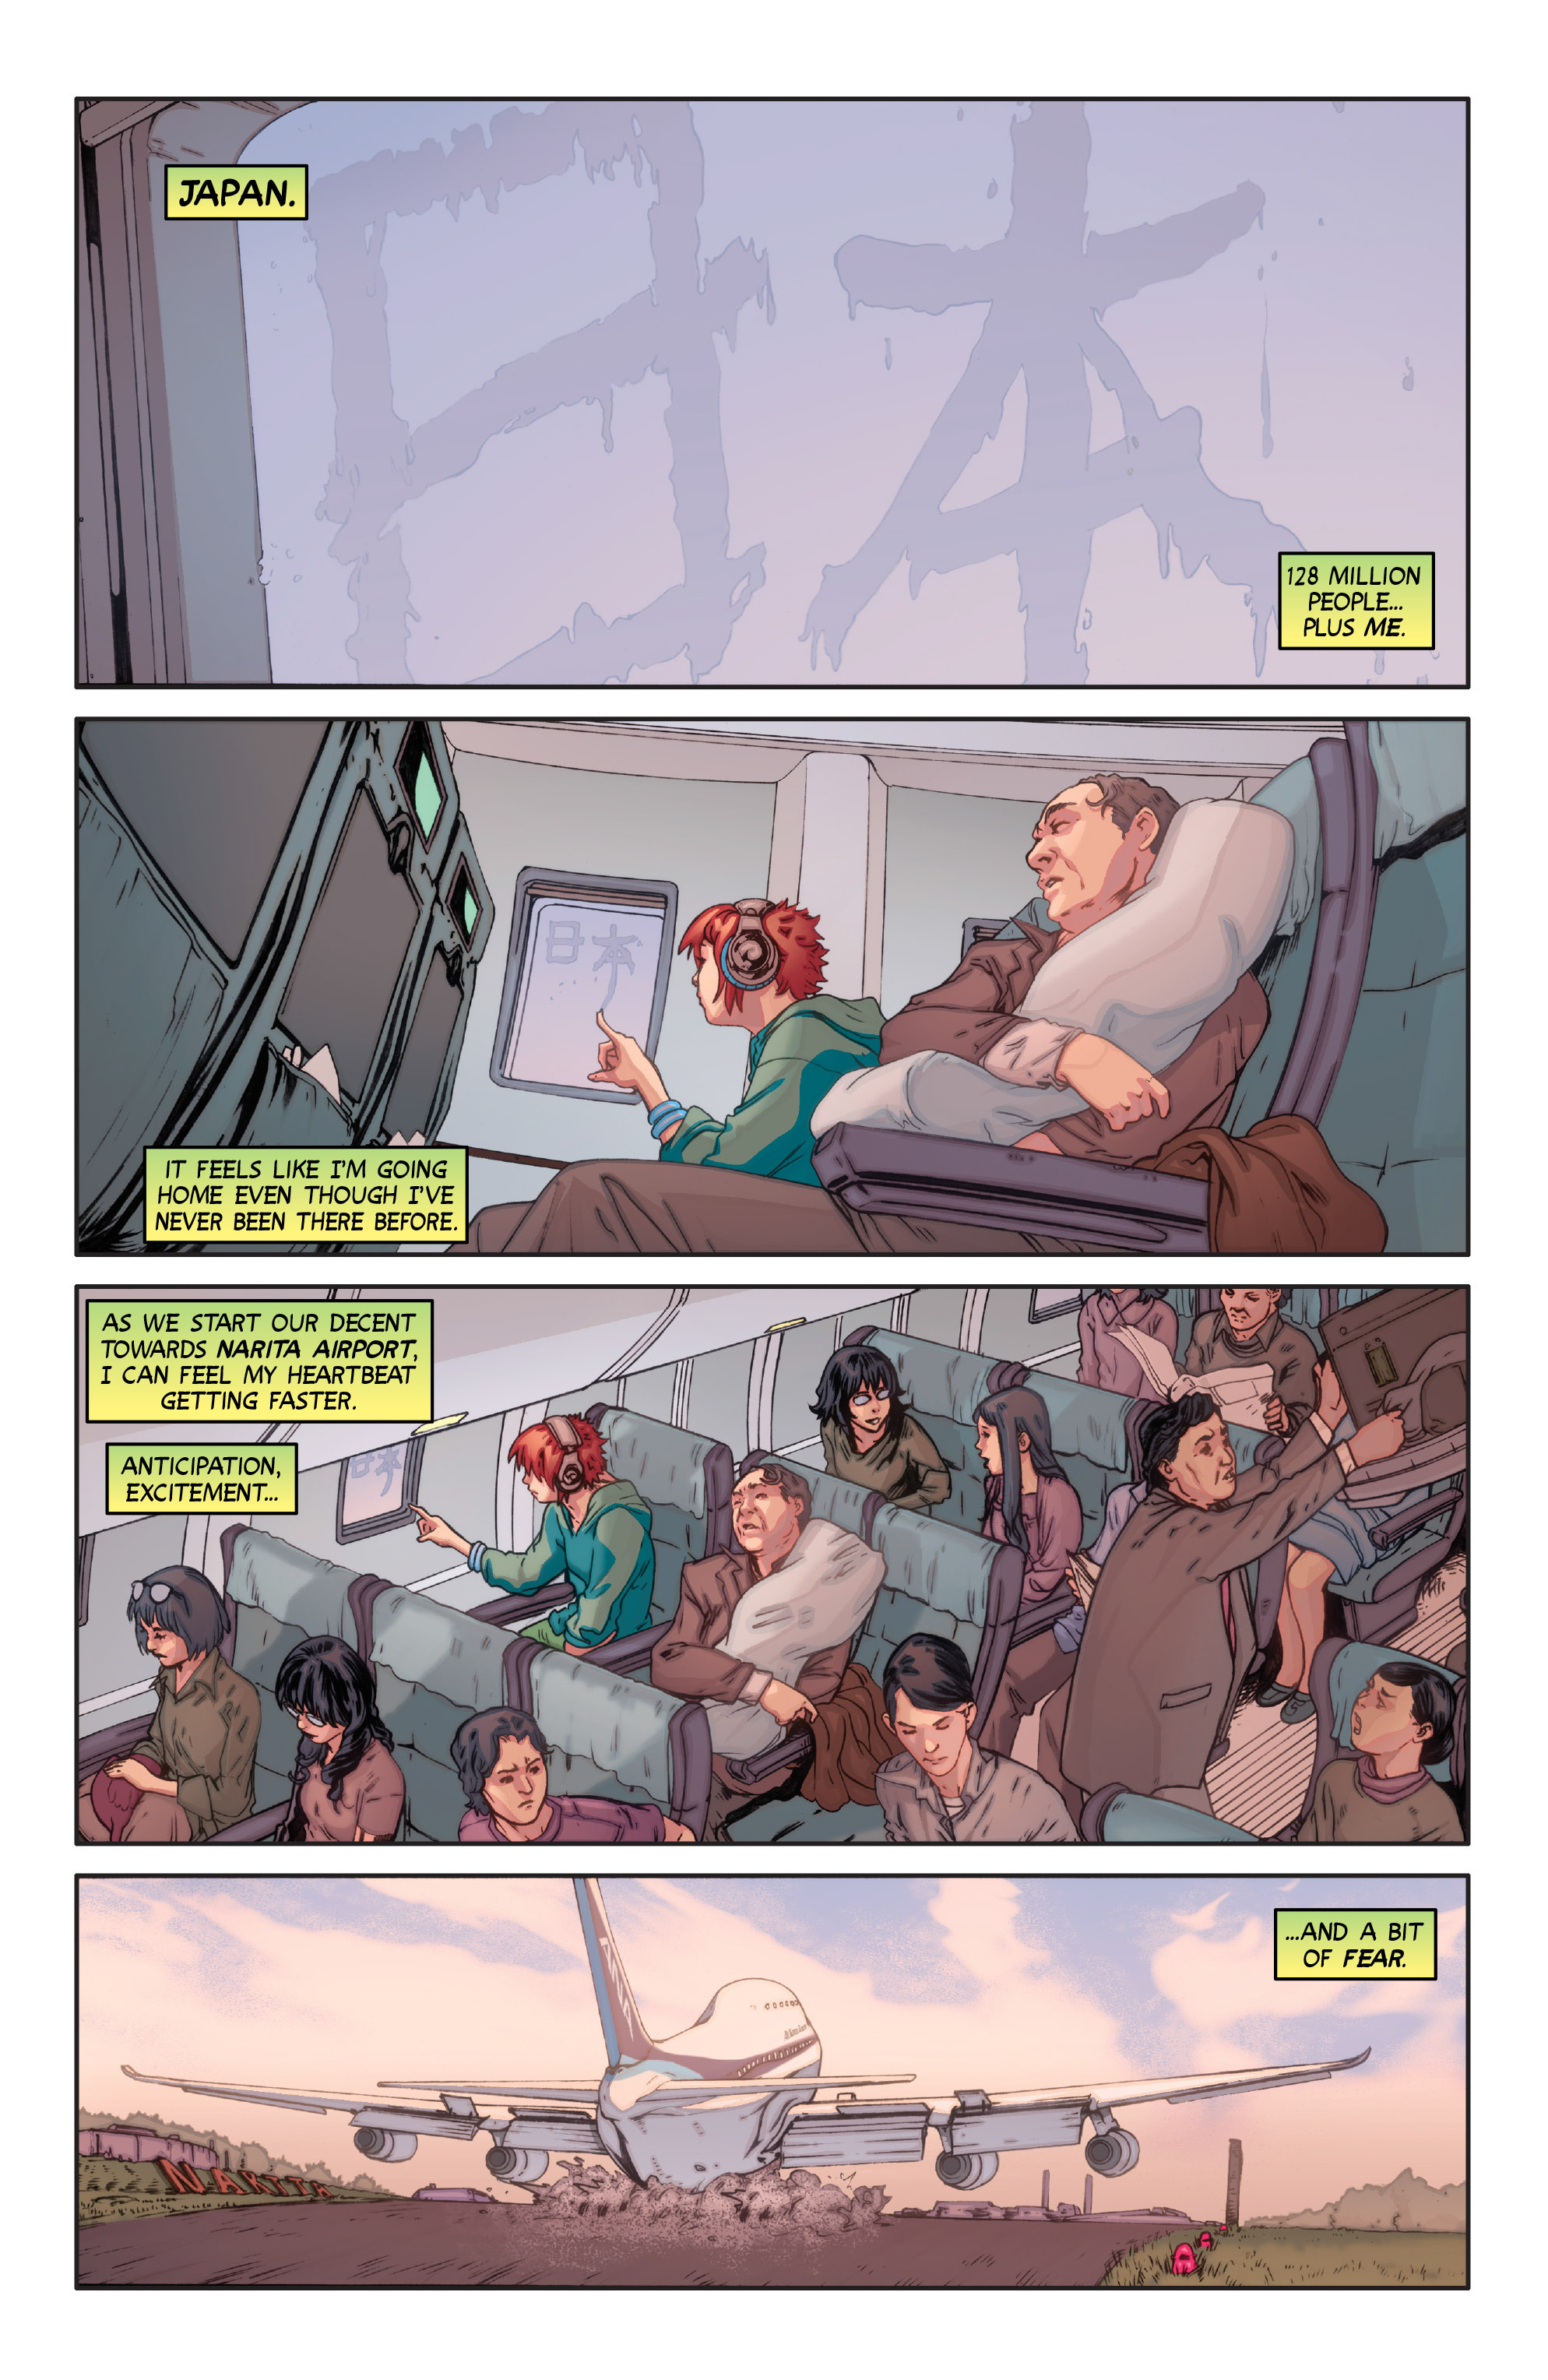 Wayward (2014-): Chapter 1 - Page 3